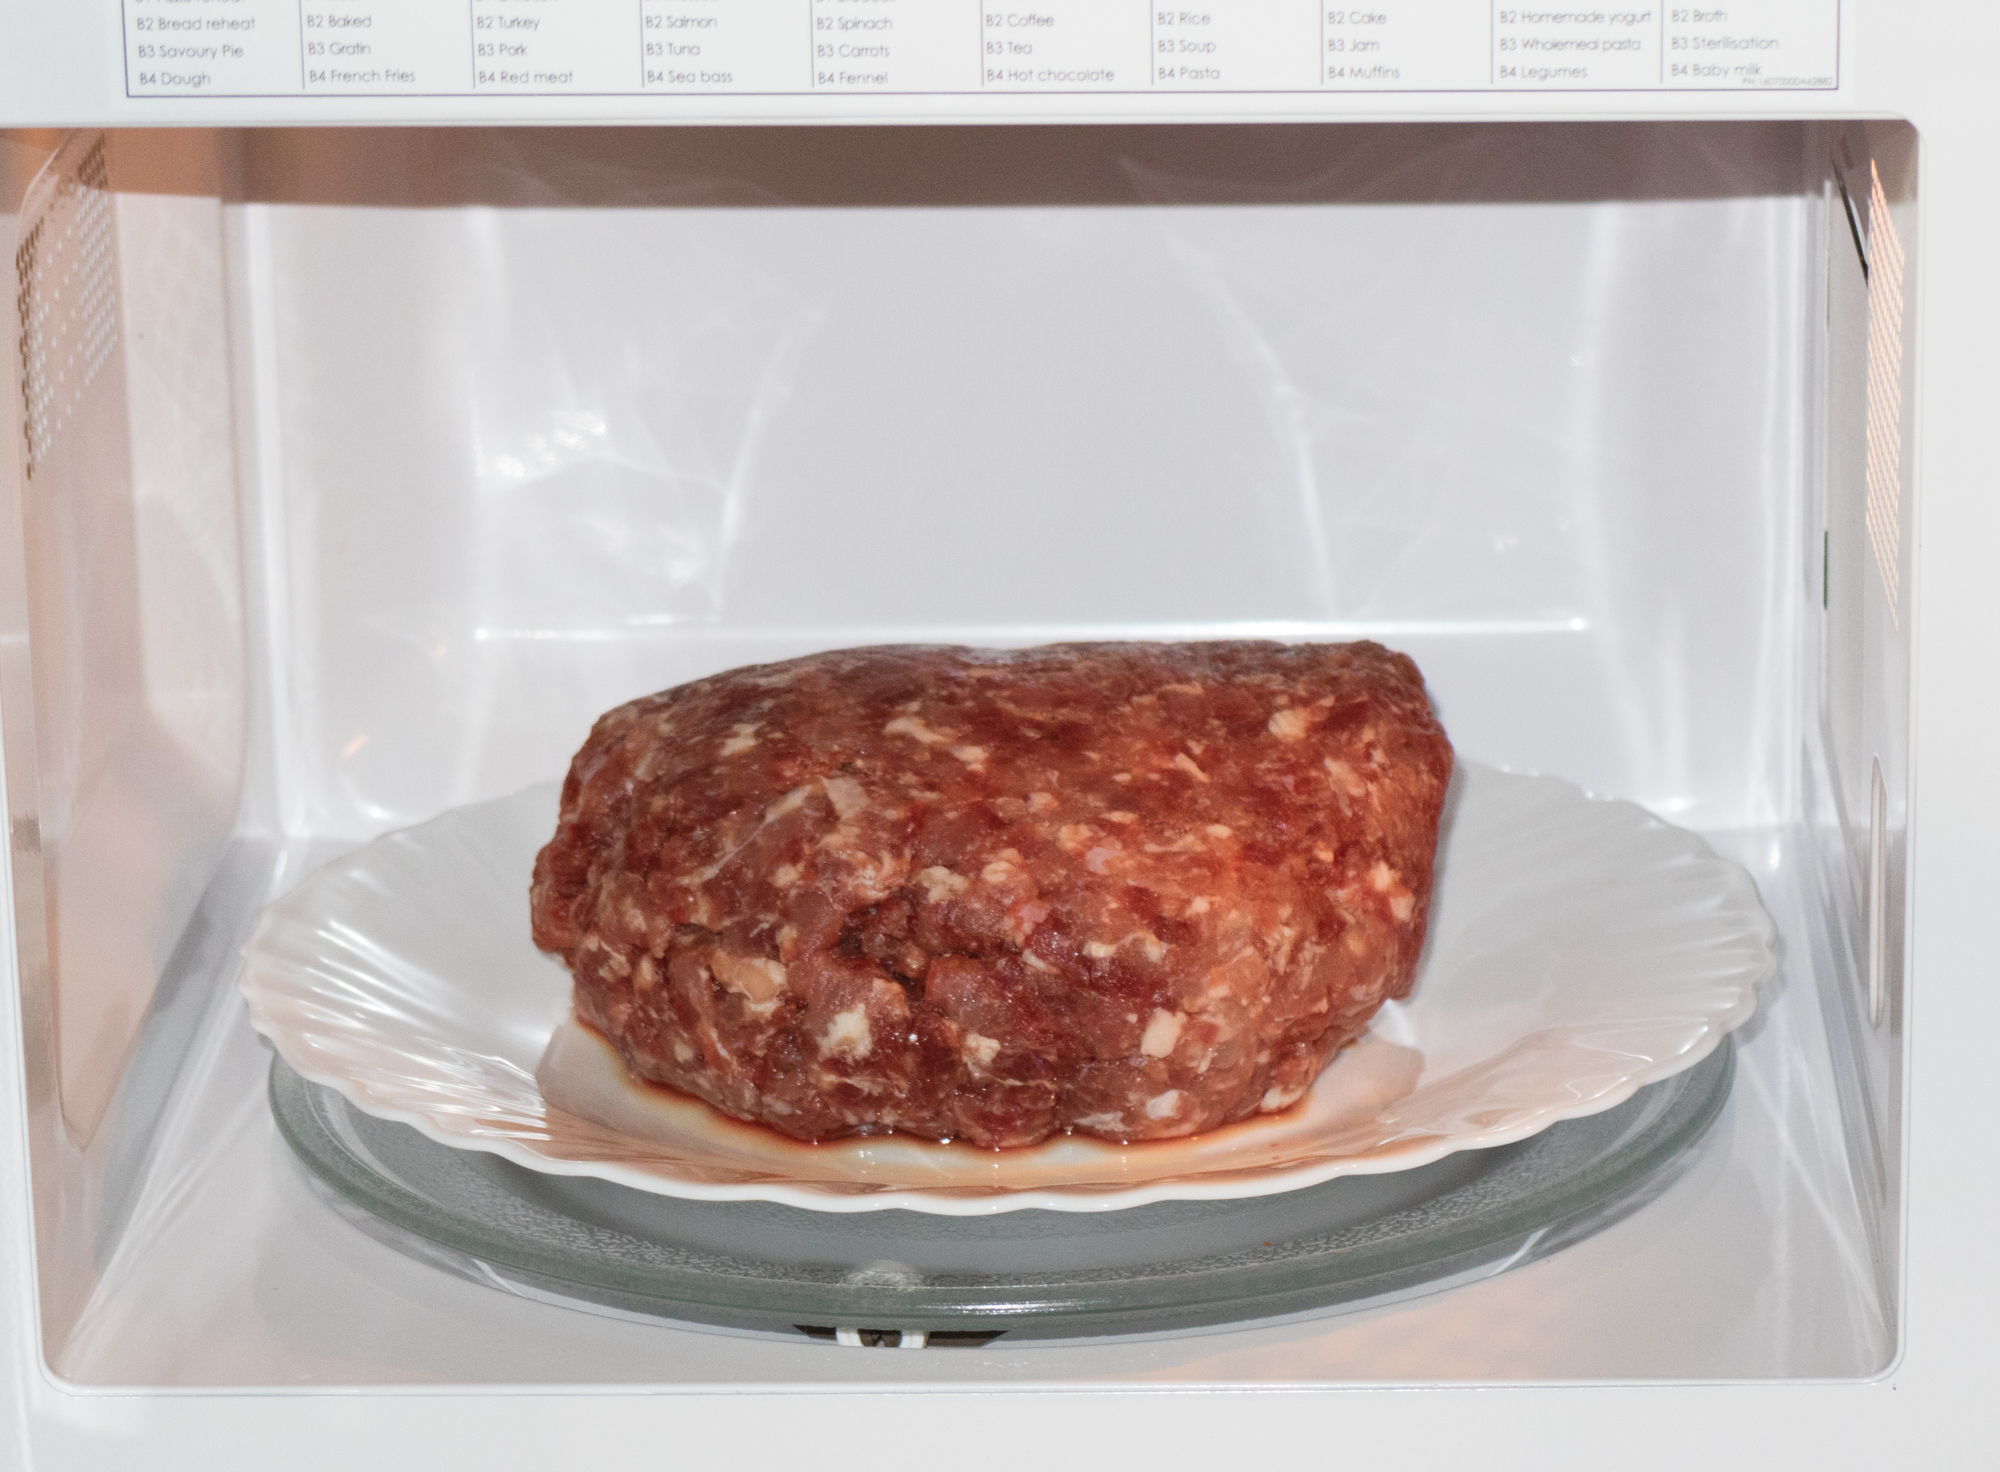 Как быстро разморозить мясо в домашних условиях: способы размораживания мяса. как правильно разморозить мясо в микроволновке, без микроволновки, в мультиварке, духовке, воде, холодильнике, при комнатной температуре, для шашлыка: советы и рекомендации